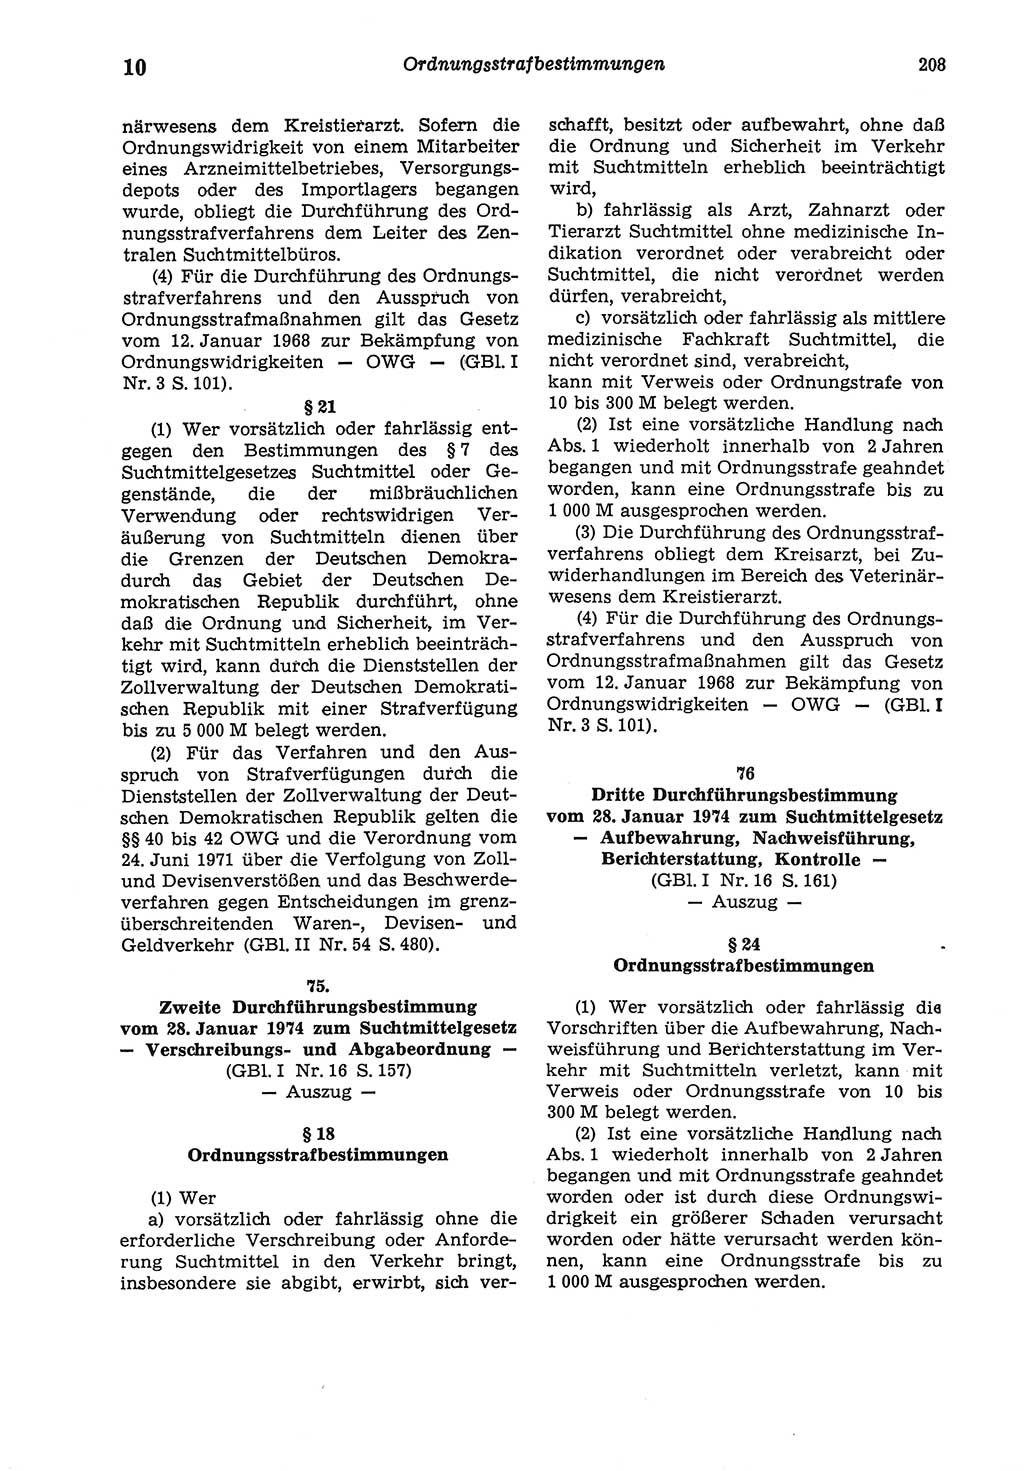 Strafgesetzbuch (StGB) der Deutschen Demokratischen Republik (DDR) und angrenzende Gesetze und Bestimmungen 1975, Seite 208 (StGB DDR Ges. Best. 1975, S. 208)